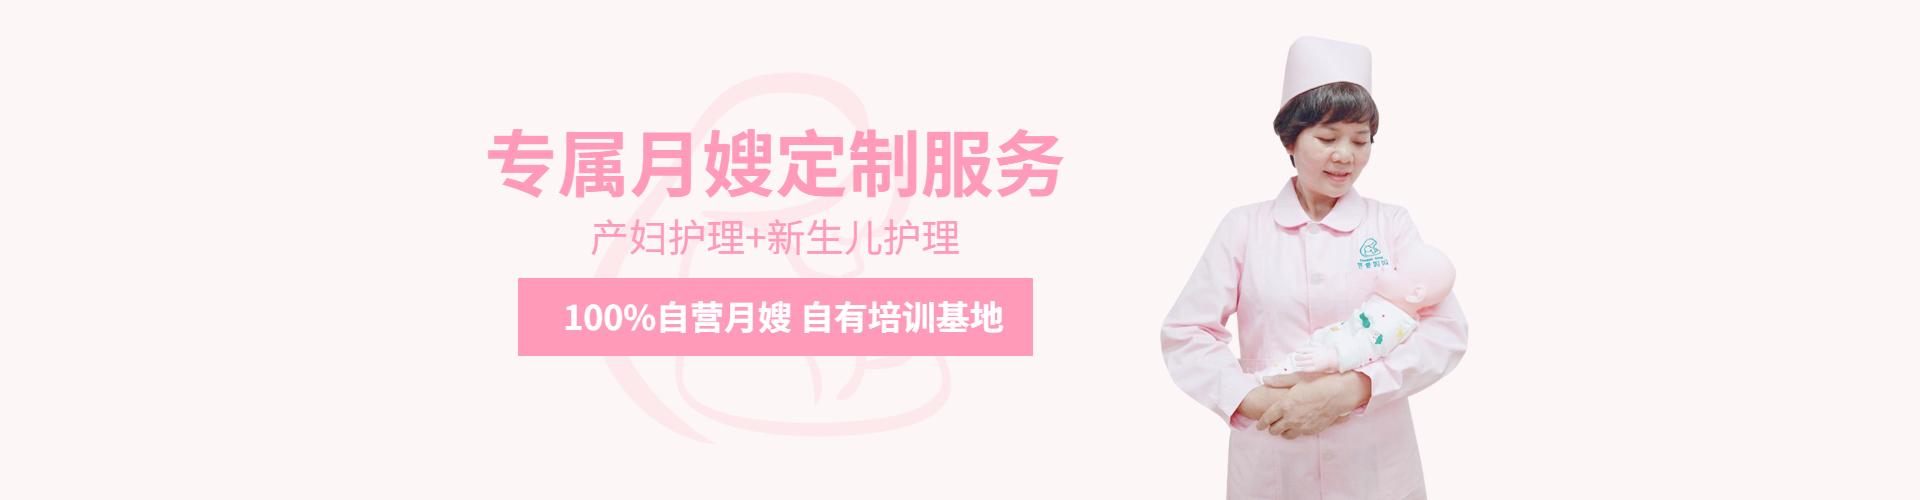 荟爱妈妈专业月嫂育儿师服务定制10年专注母婴护理